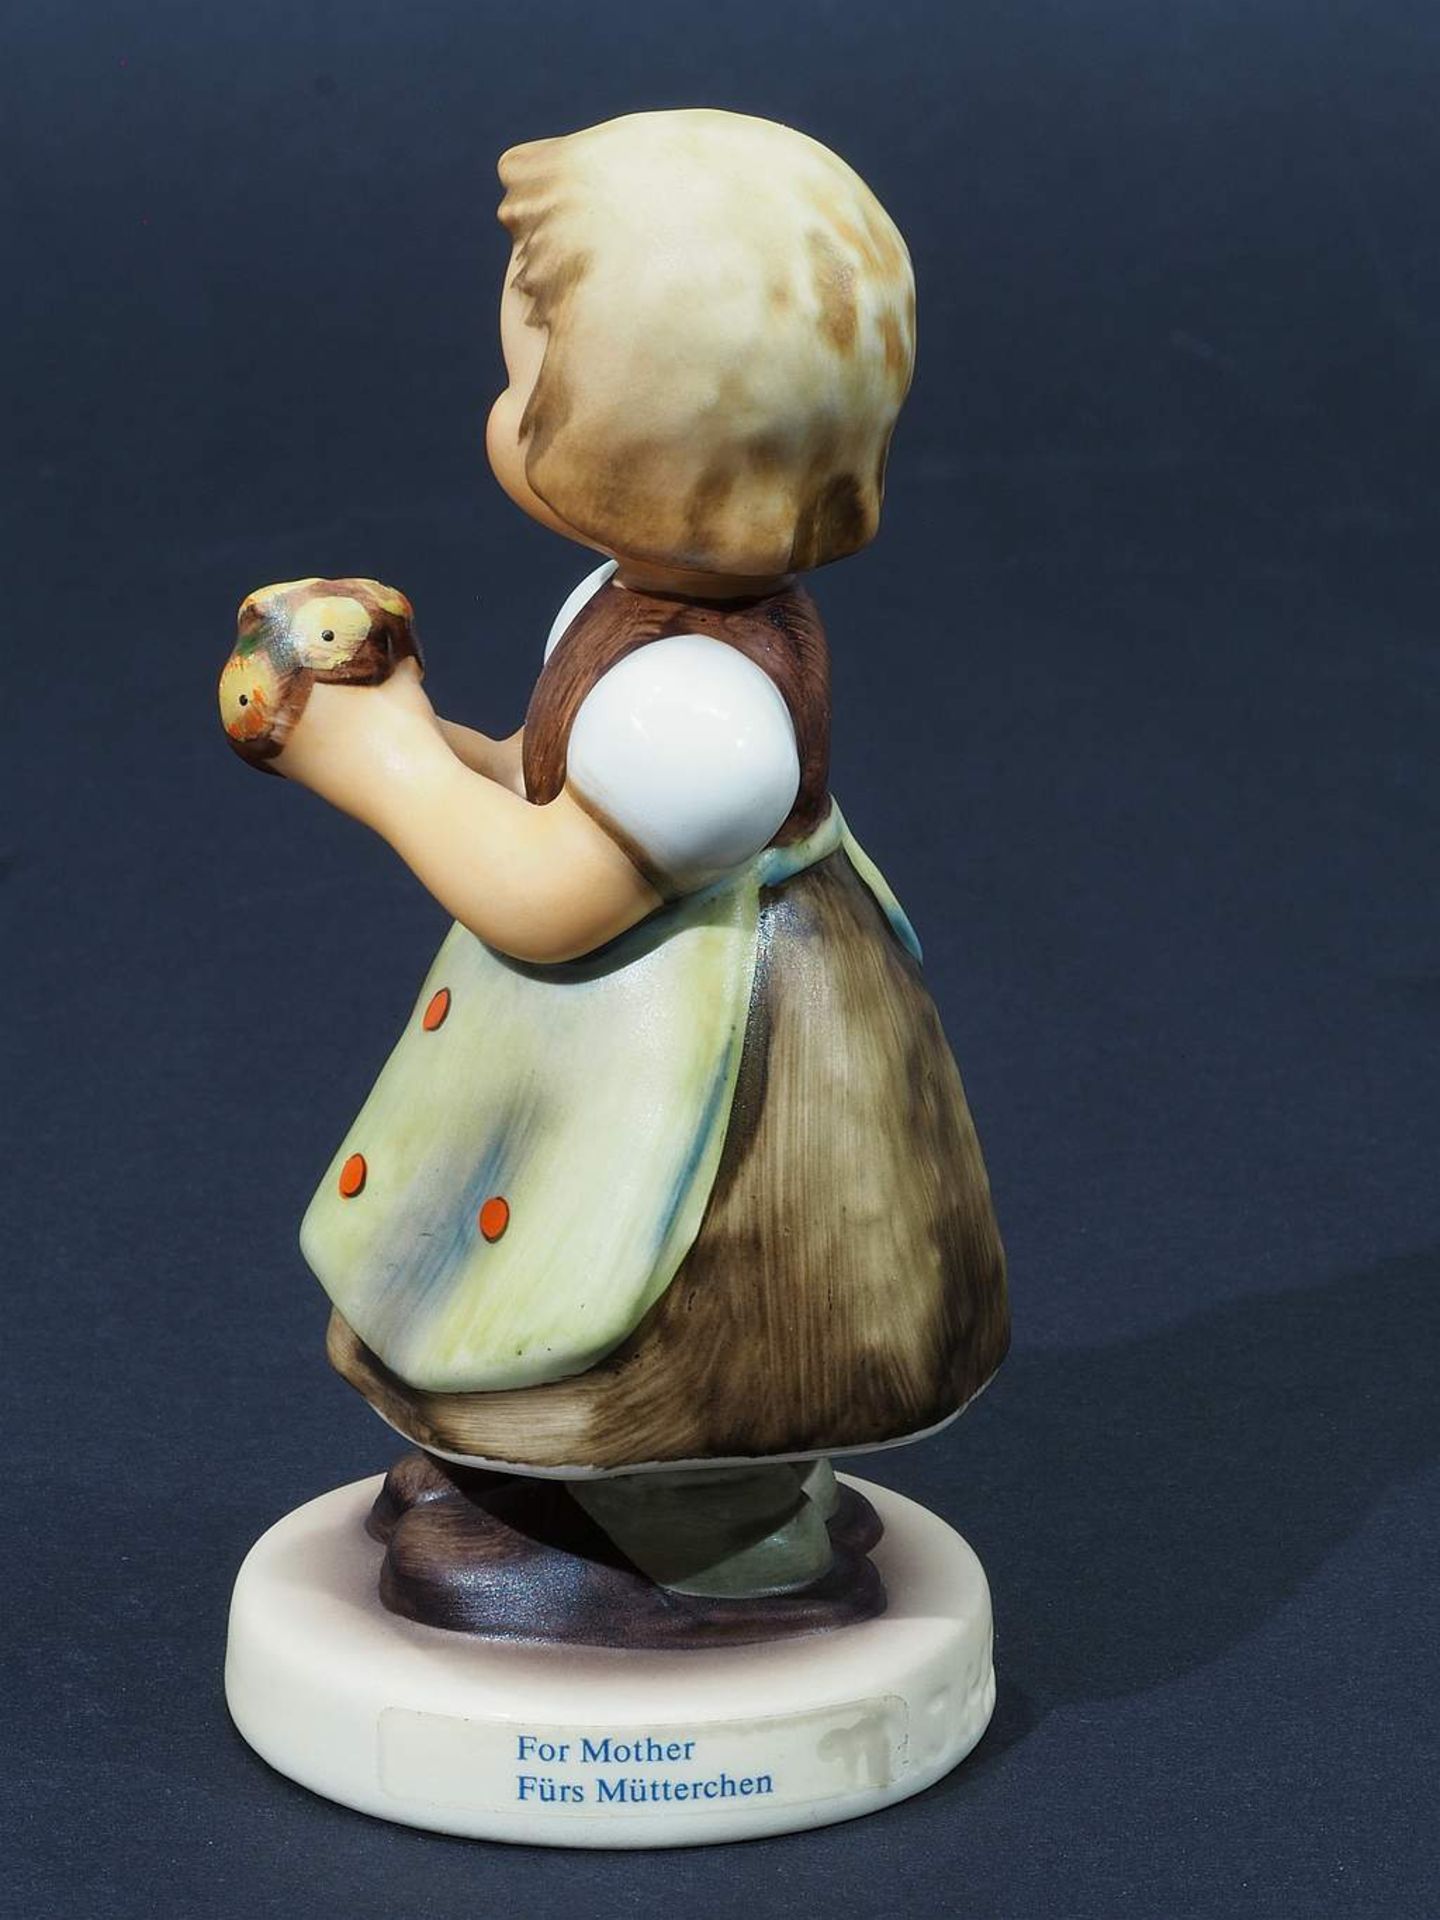 Goebel Figur "Fürs Mütterchen", 1984. Modell Nummer 257. Farbig bemalt, Höhe 10,5 cm. - Bild 5 aus 7